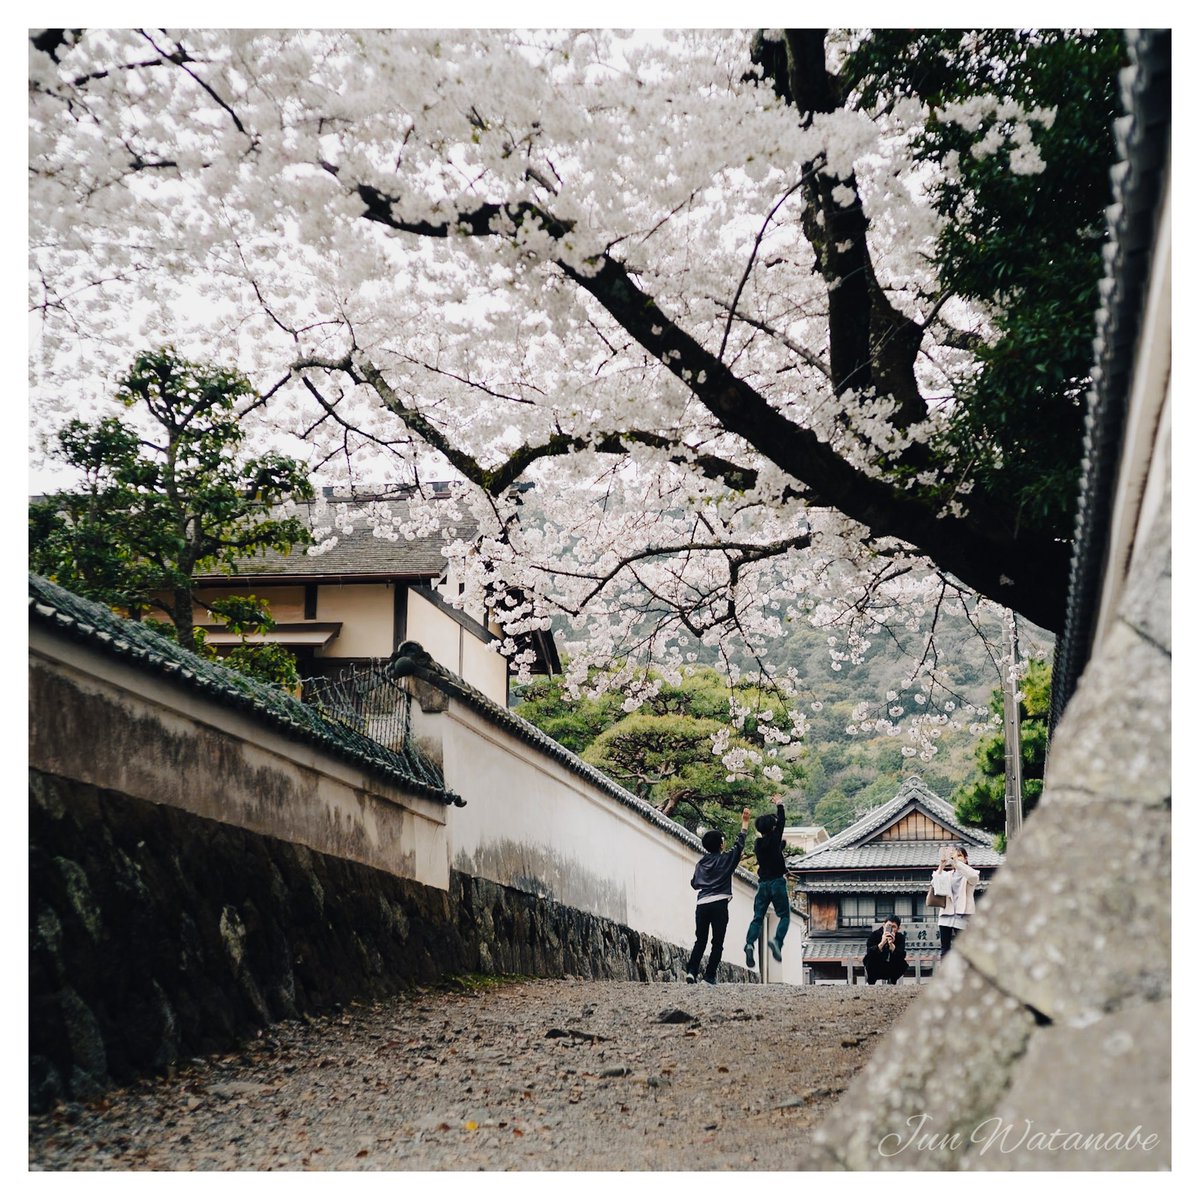 Camera:SONY α7III
Lens:Sankyo Koki Tokyo Komura 105/3.5

#SnapShot #cherryblossom #CherryBlossoms #landscapephotography #flower #photograghy #photographer #SonyAlpha #oldlens #スナップ写真 #桜 #花 #オールドレンズ #キリトリセカイ #写真好きな人と繋がりたい